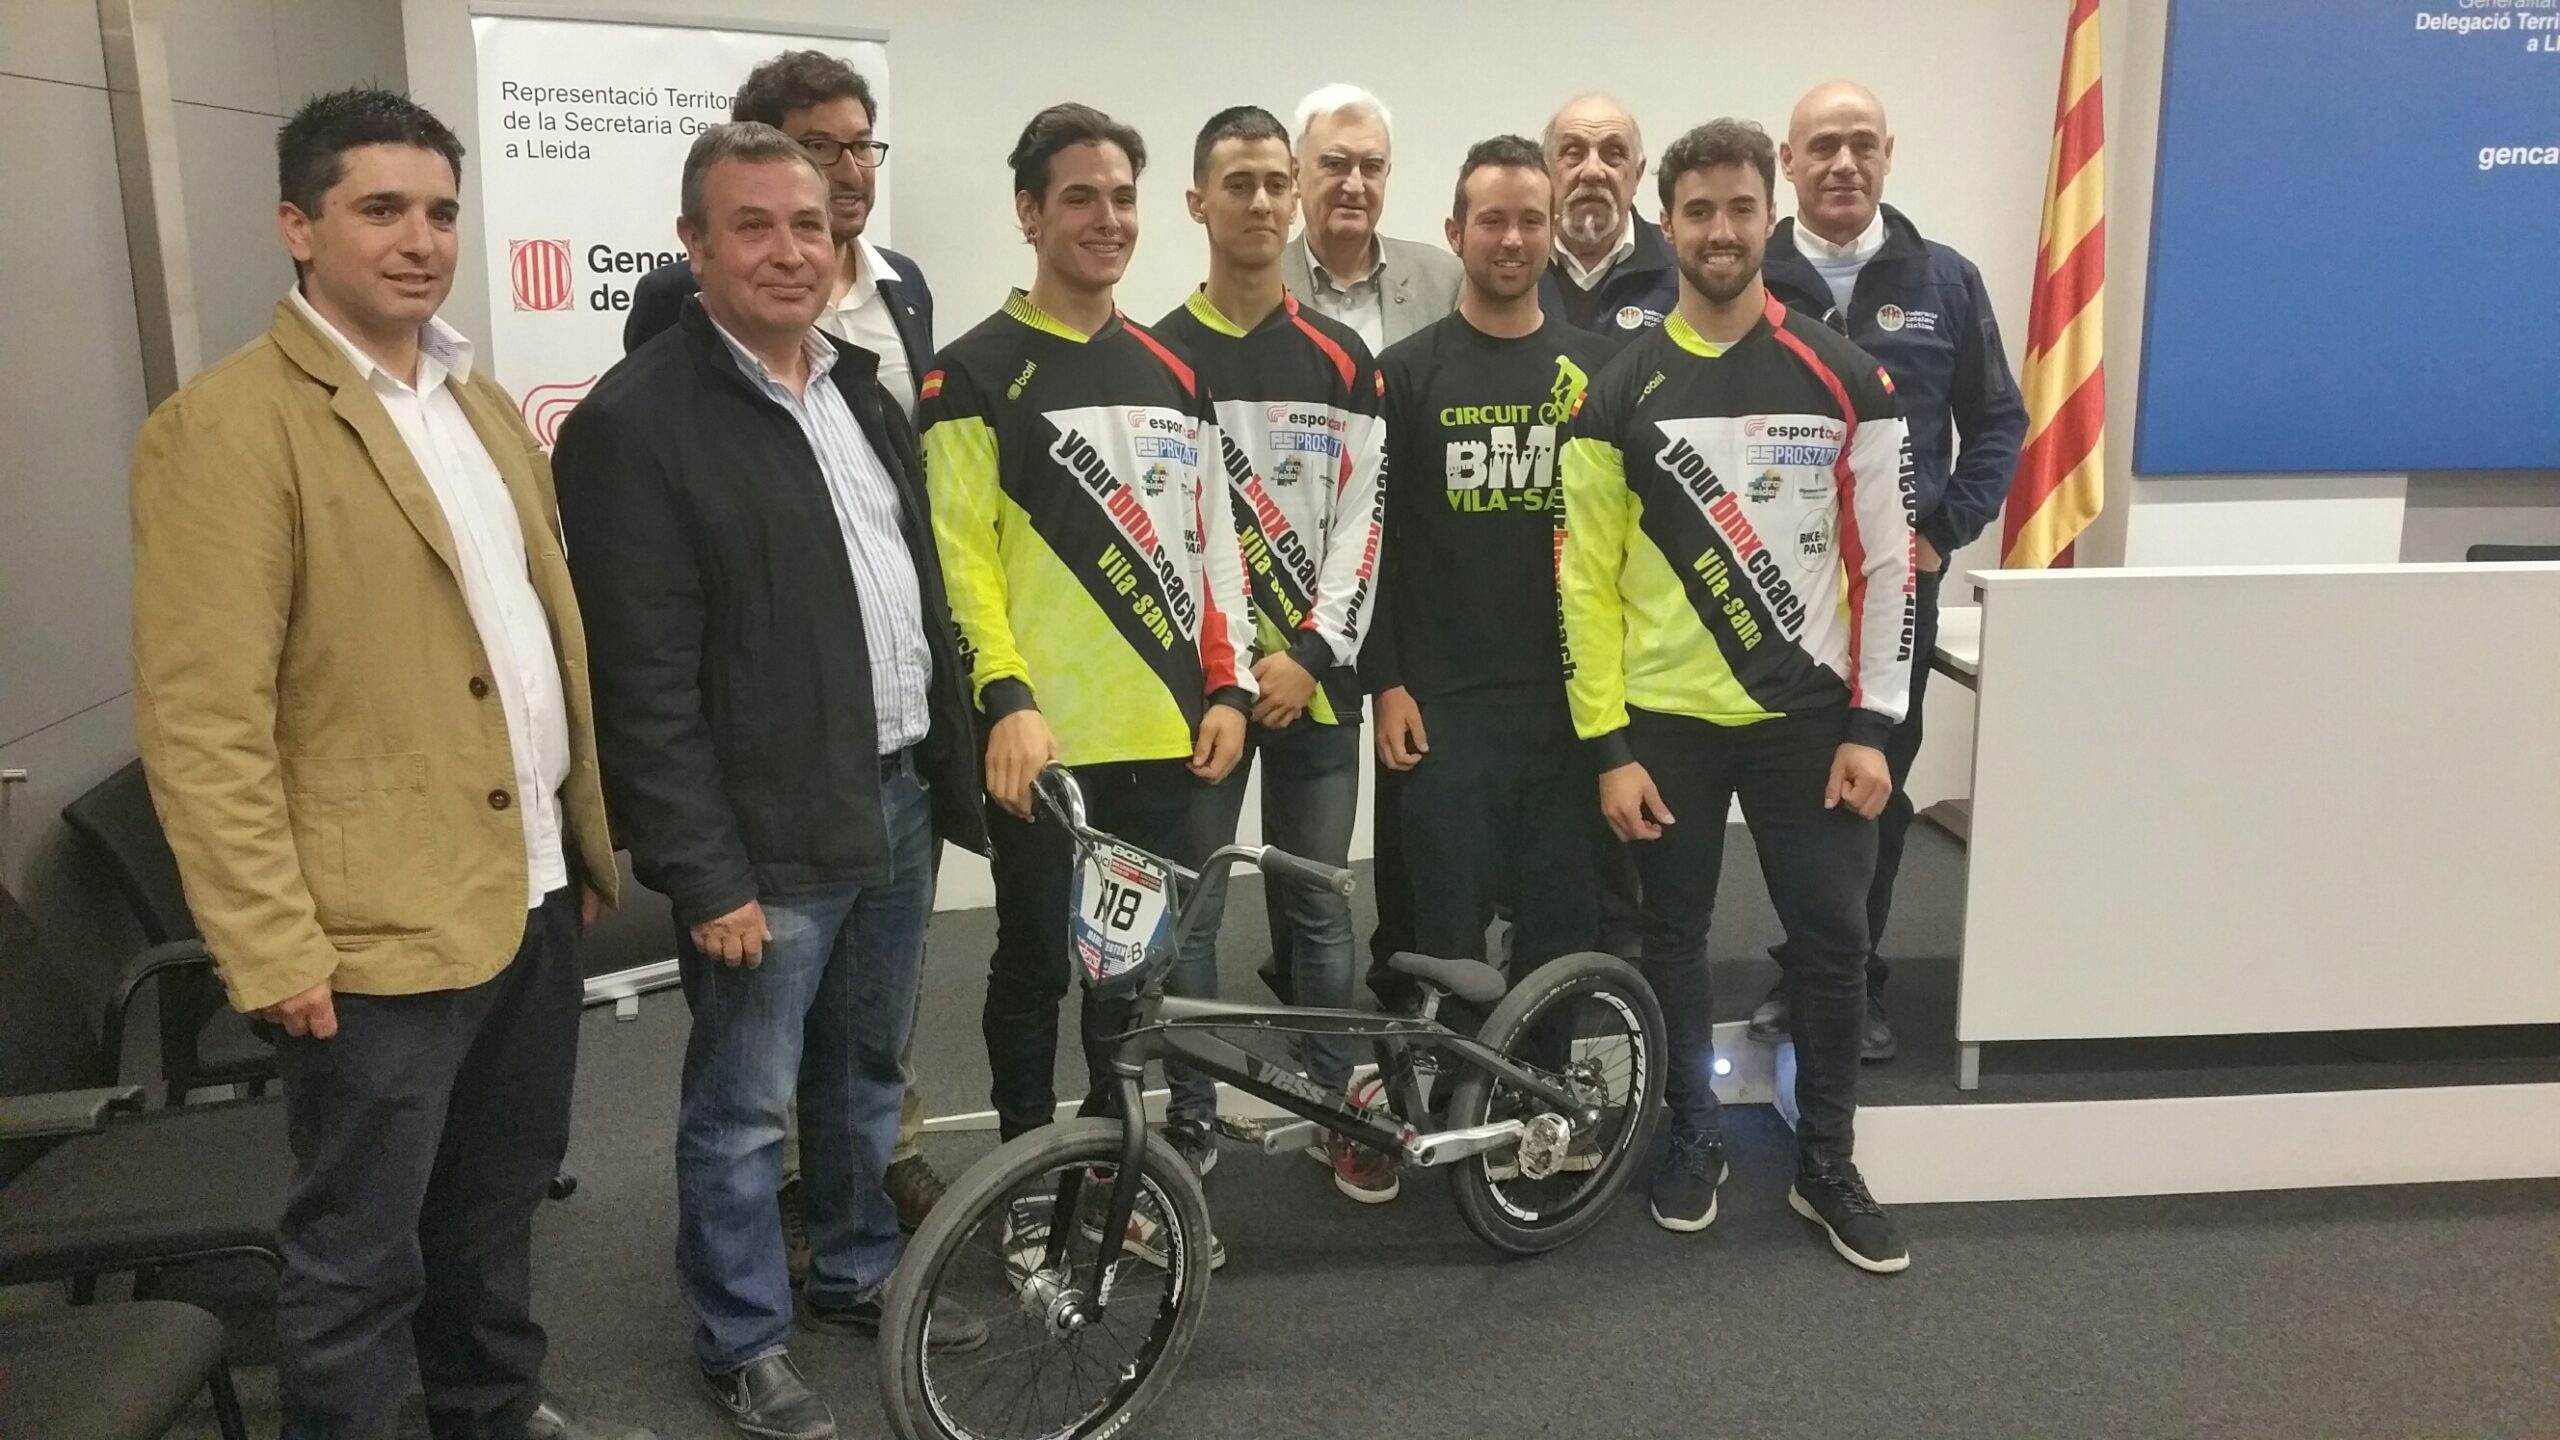 El Club BMX Vila-sana participarà en el proper Campionat d’Europa, que se celebrarà entre l’abril i el juny a Zolder, Erp, Praga i Verona